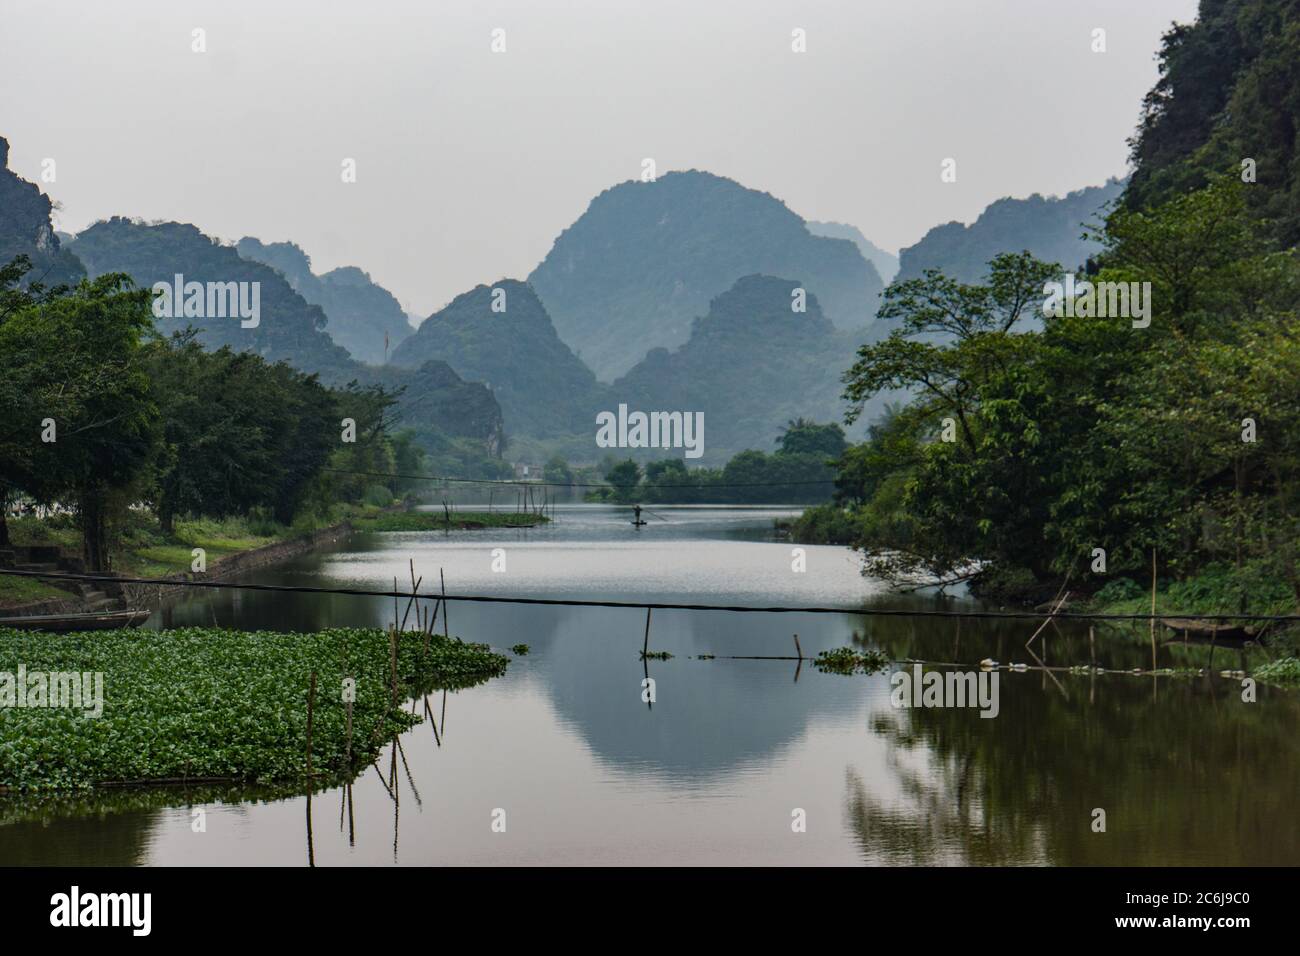 río y montañas de piedra caliza en Hoa Lu, antigua capital de Vietnam Foto de stock